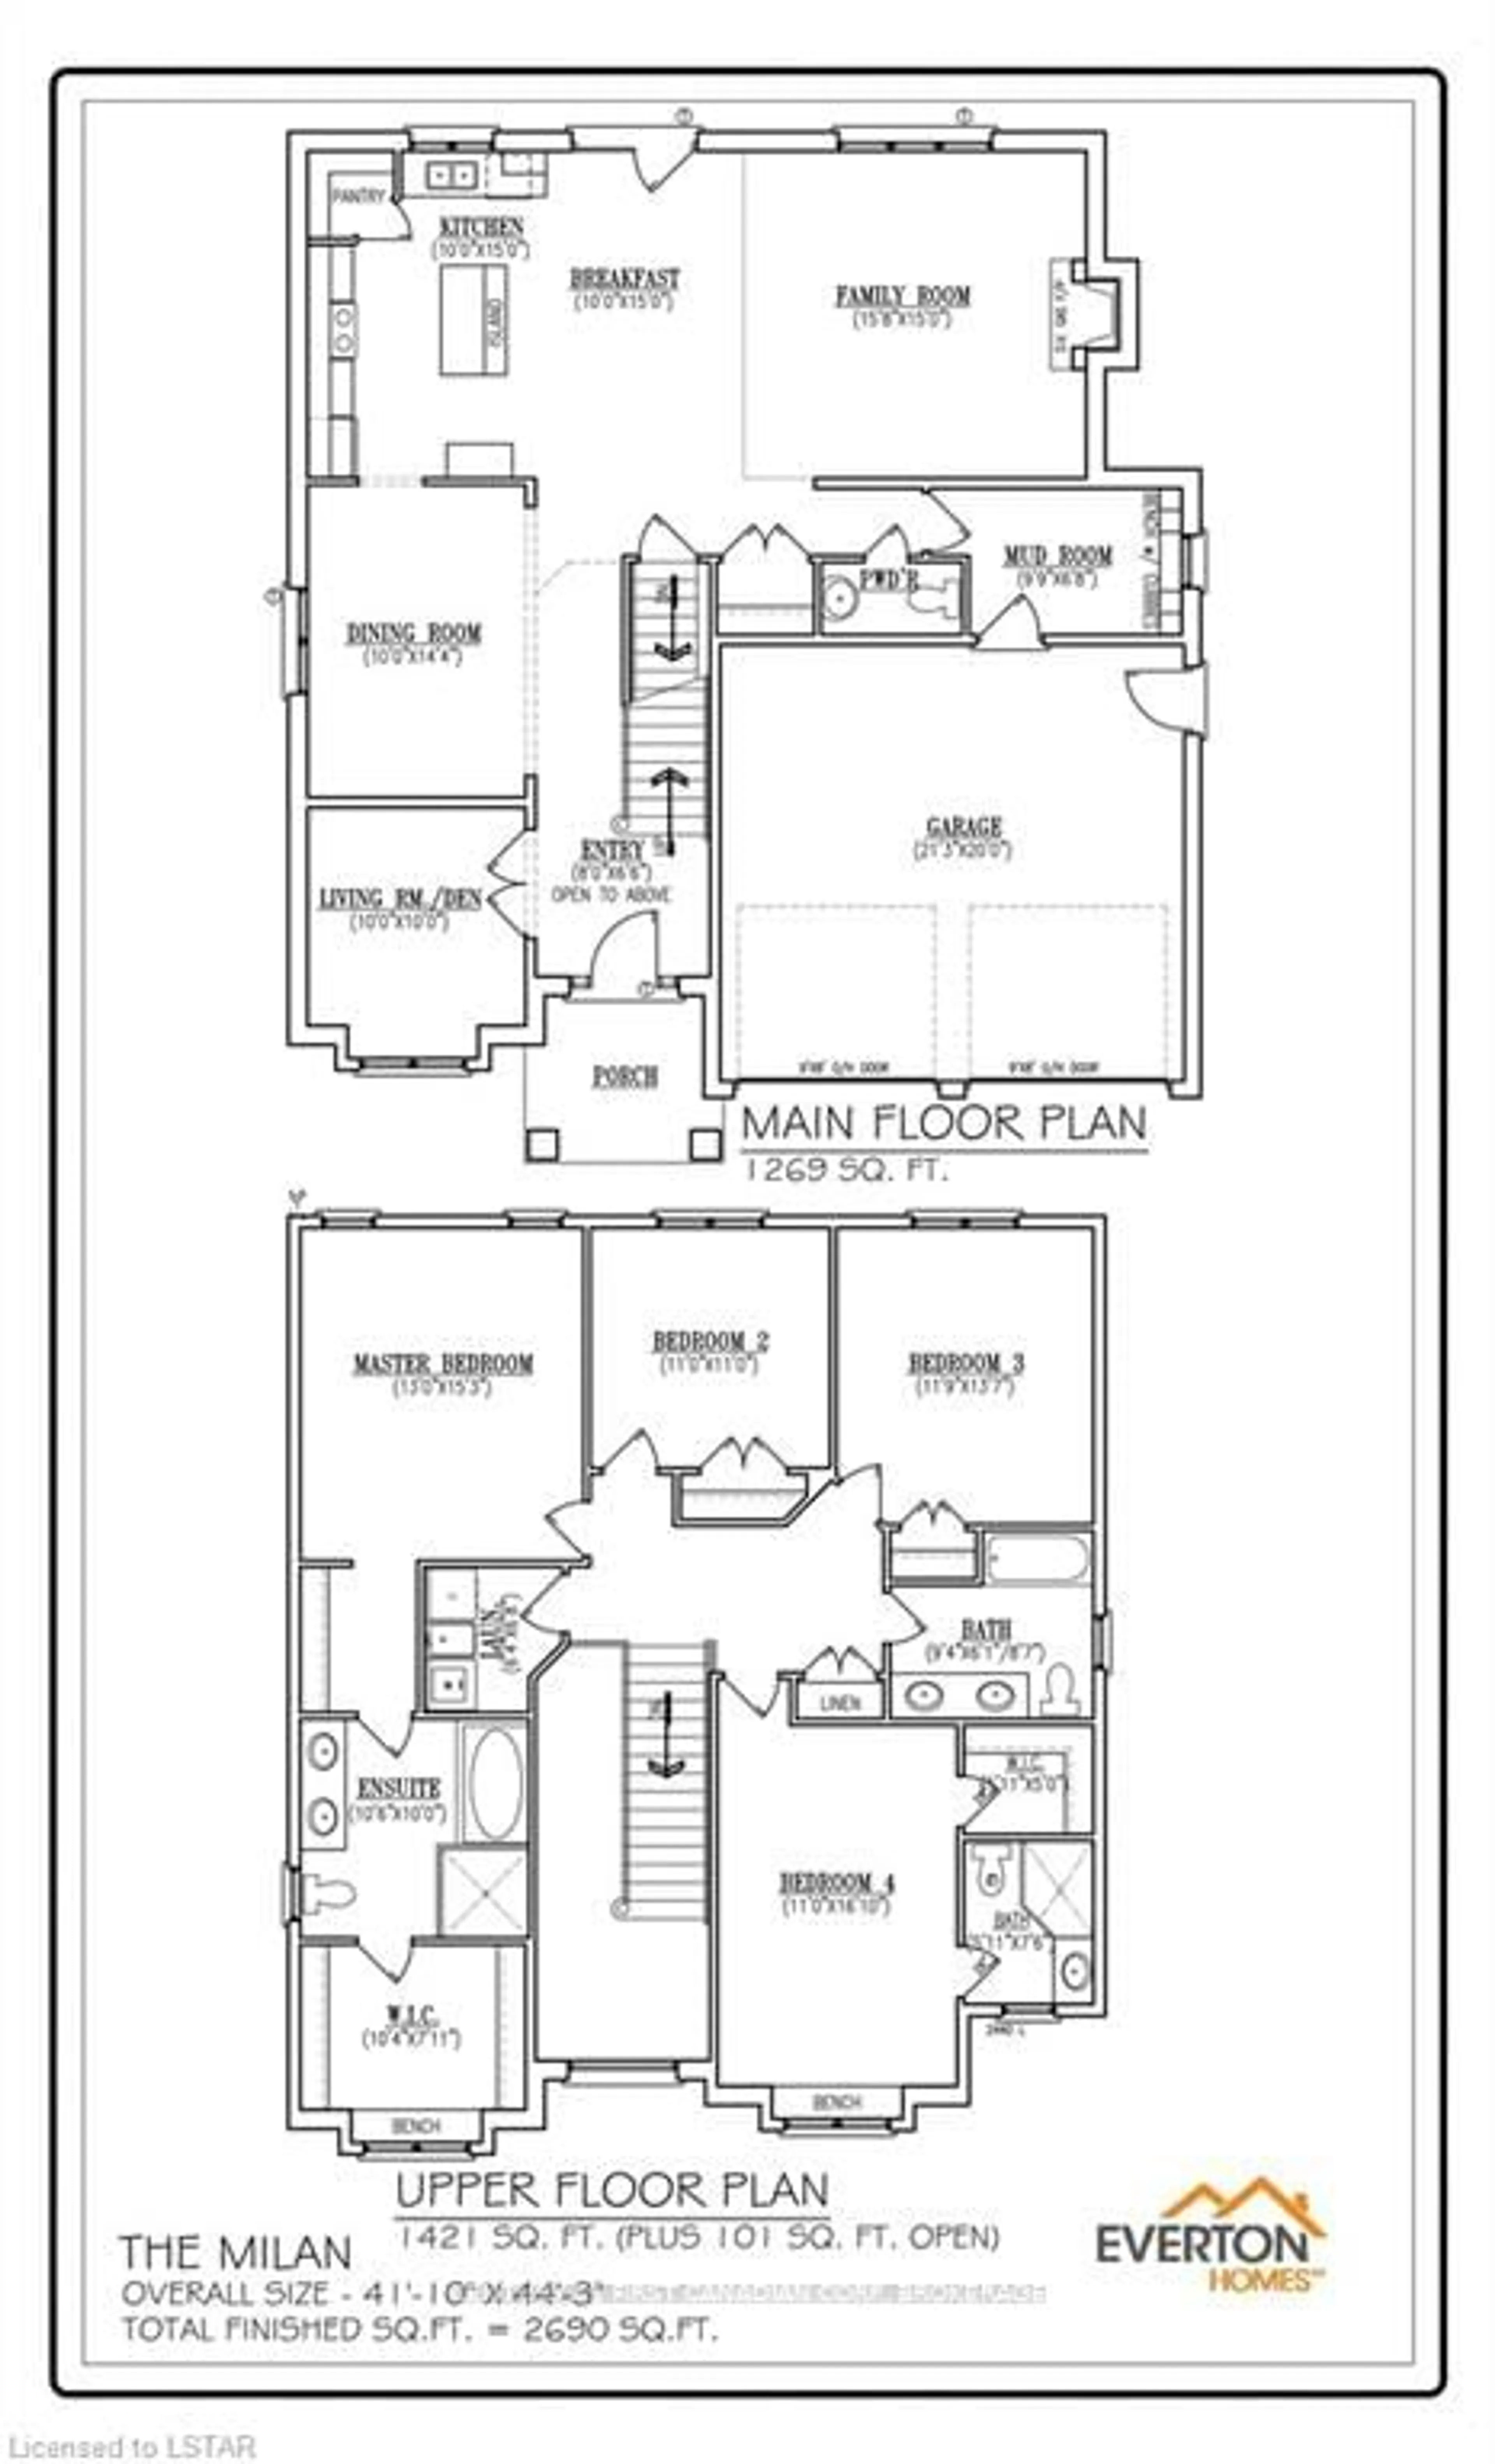 Floor plan for Lot 19 Linkway Blvd, London Ontario N6K 0K9